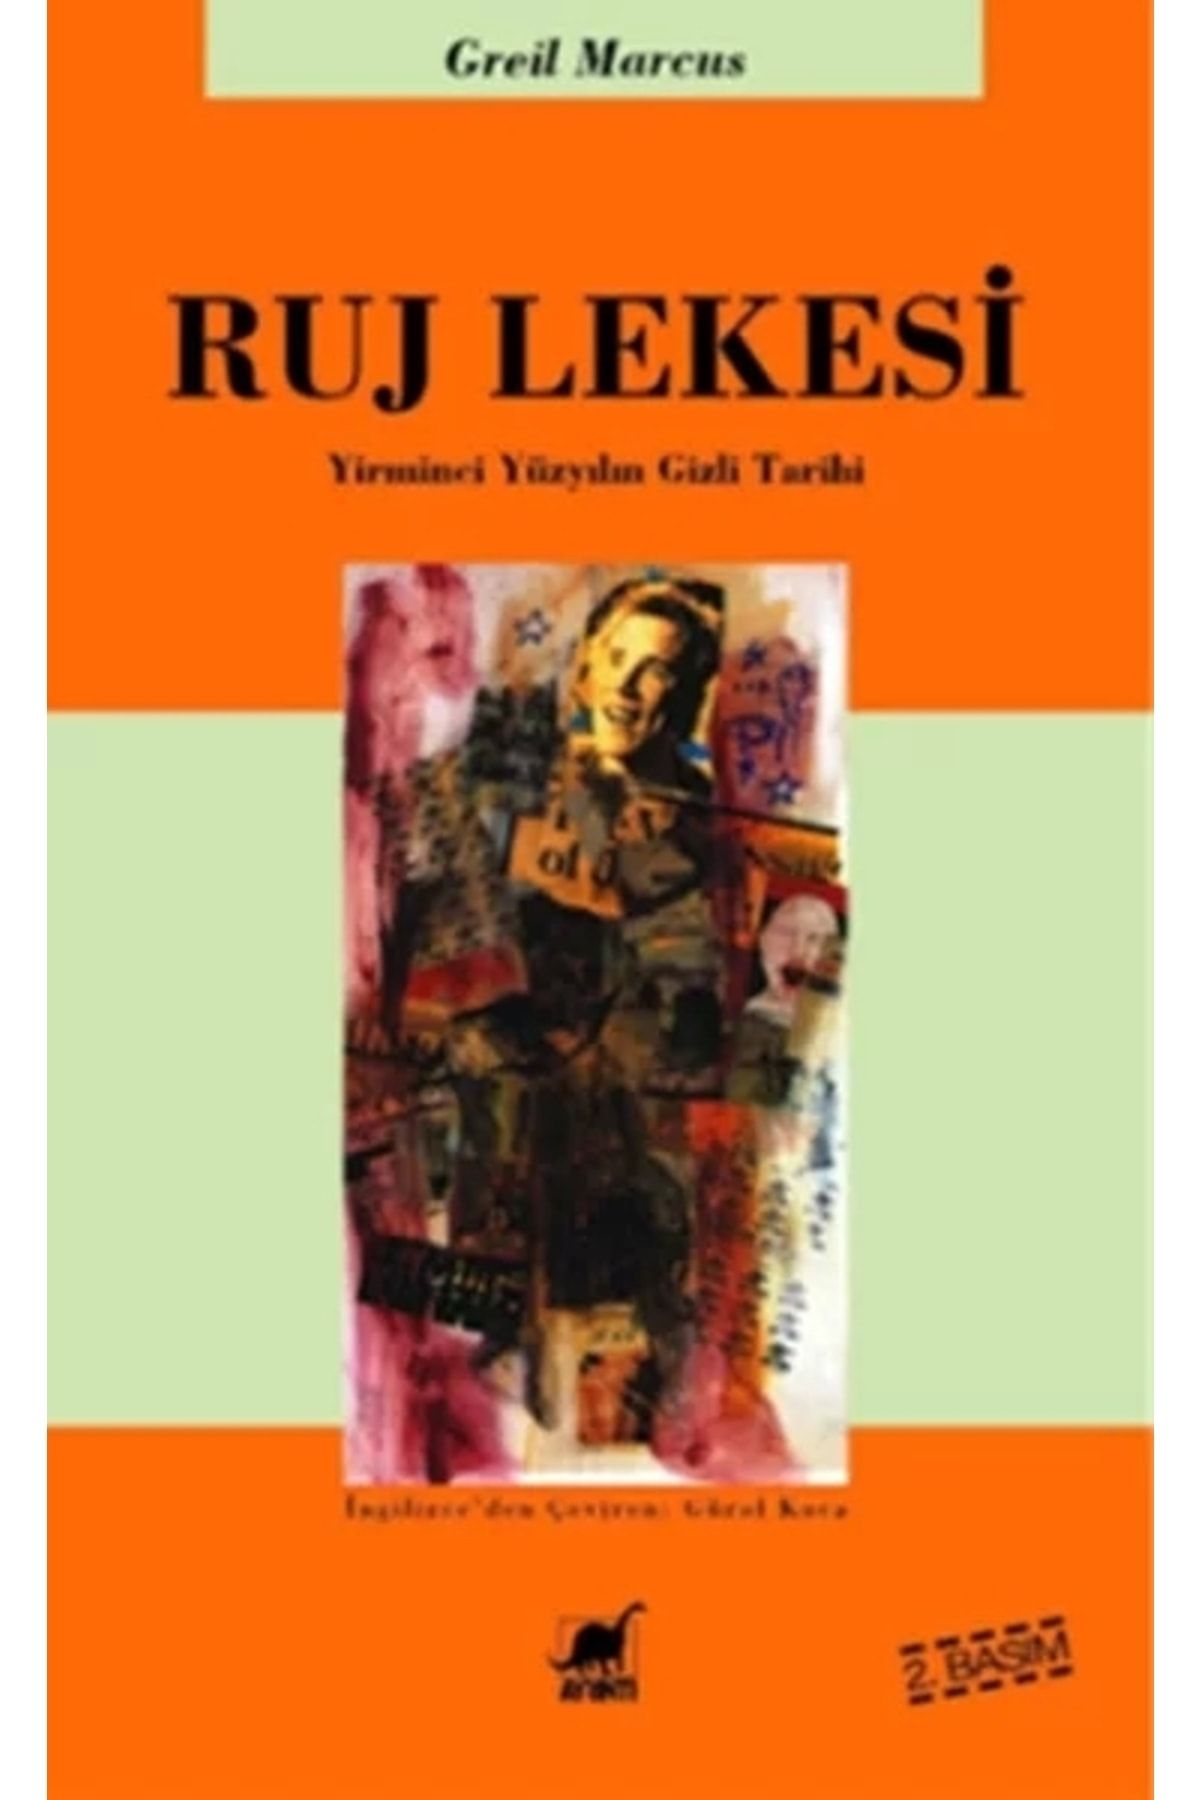 Ayrıntı Yayınları Ruj Lekesi -yirminci Yüzyılın Gizli Tarihi